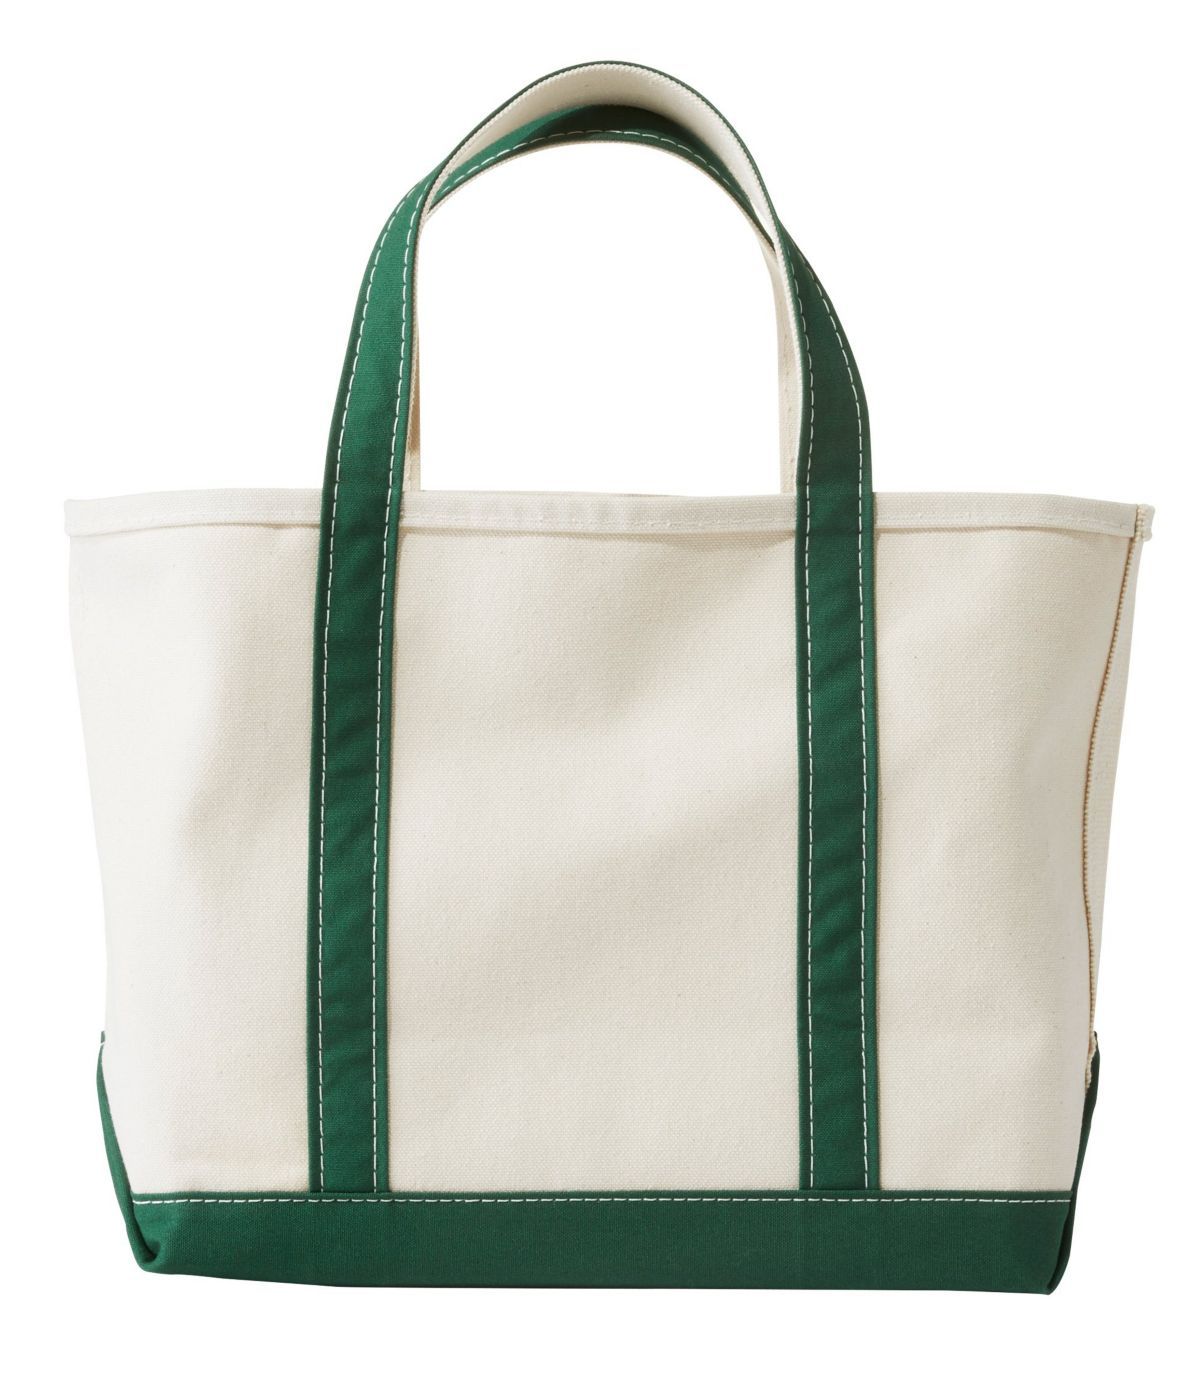 Tote Bags | Bags & Travel at L.L.Bean | L.L. Bean